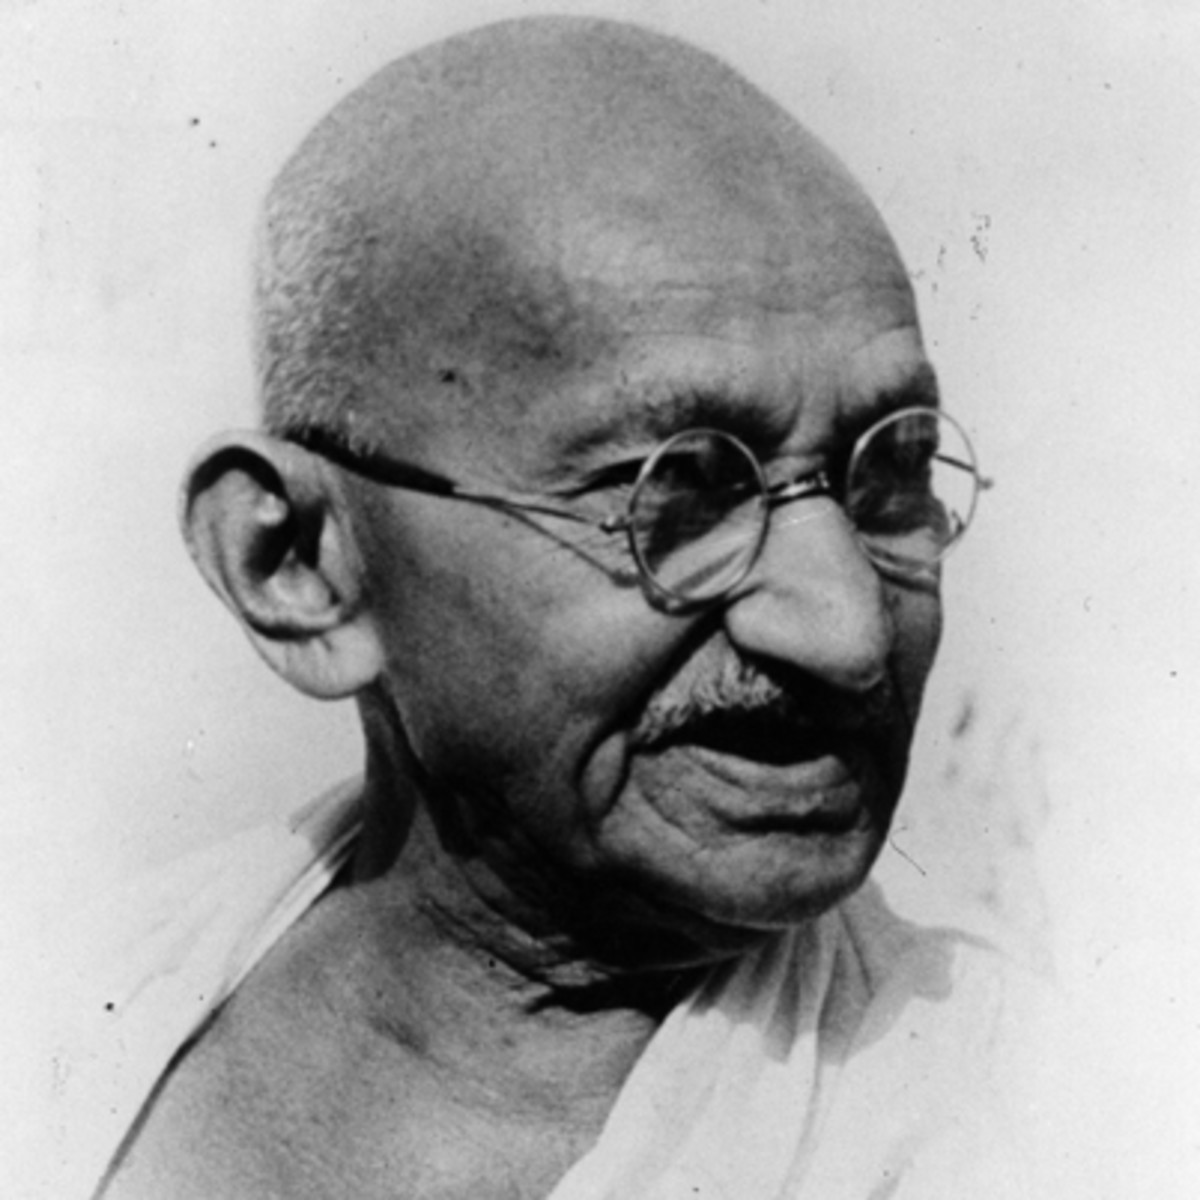 Famous portrait of Mahatma Gandhi, the famous Indian leader.